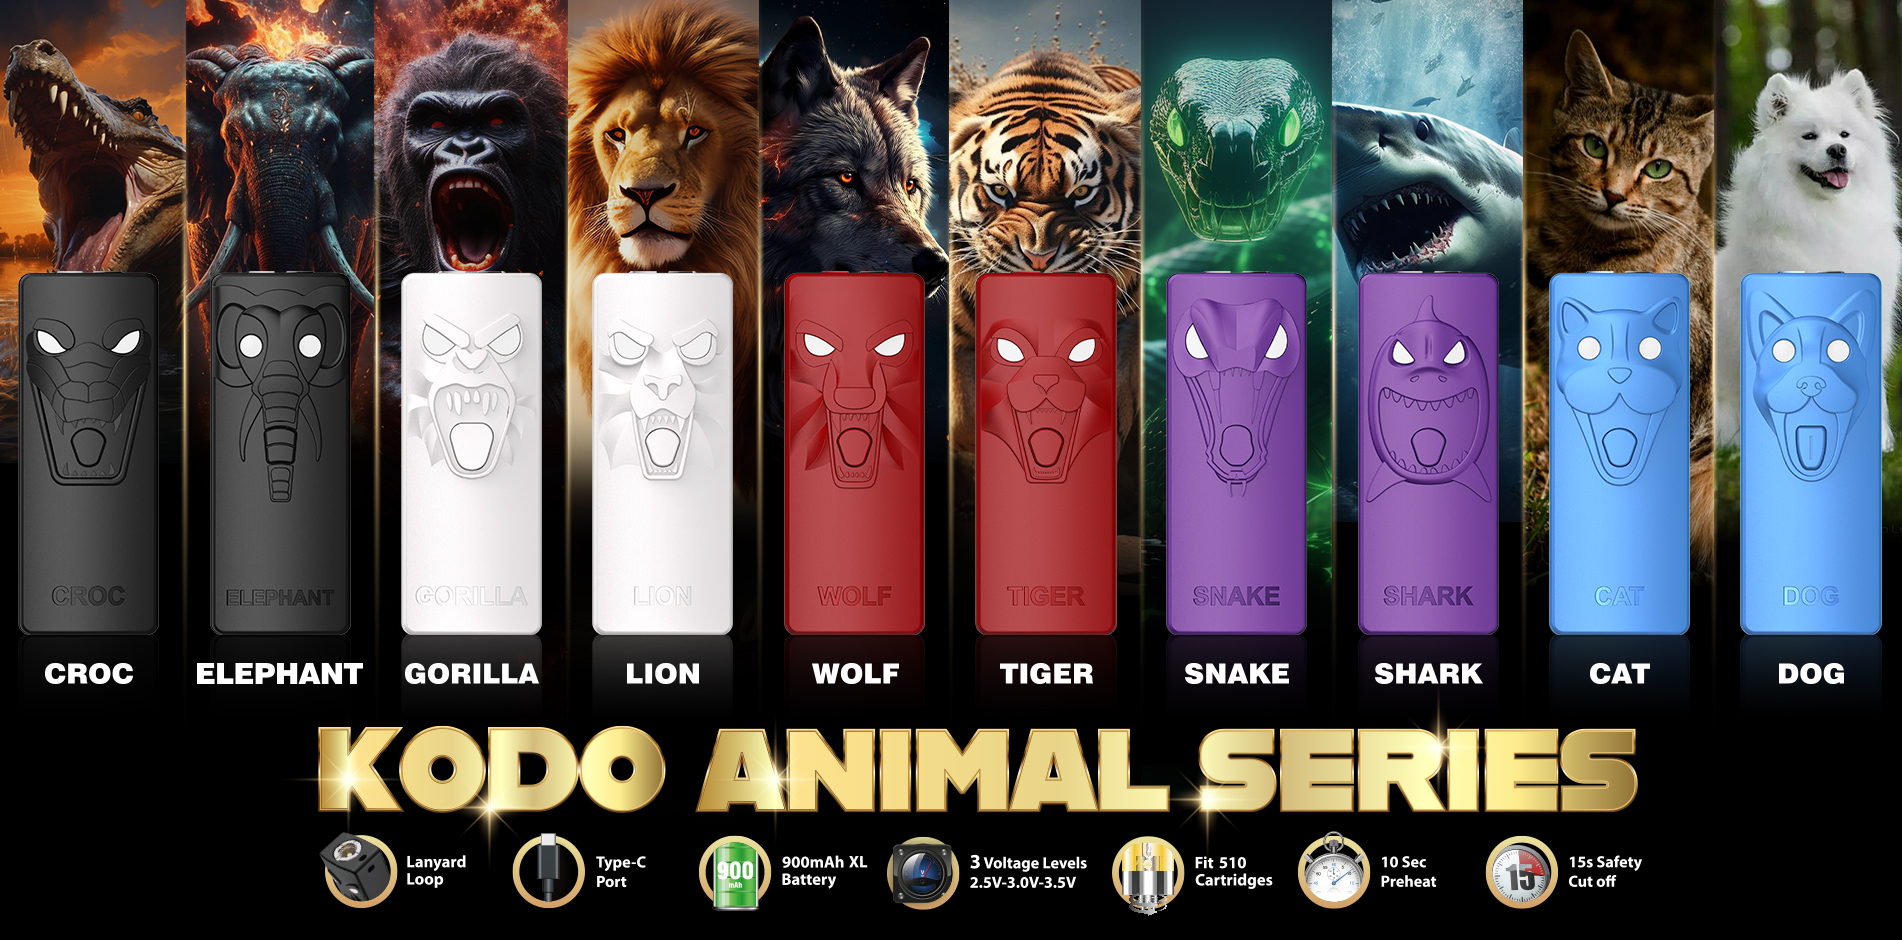 Yocan Kodo Animal Series banner